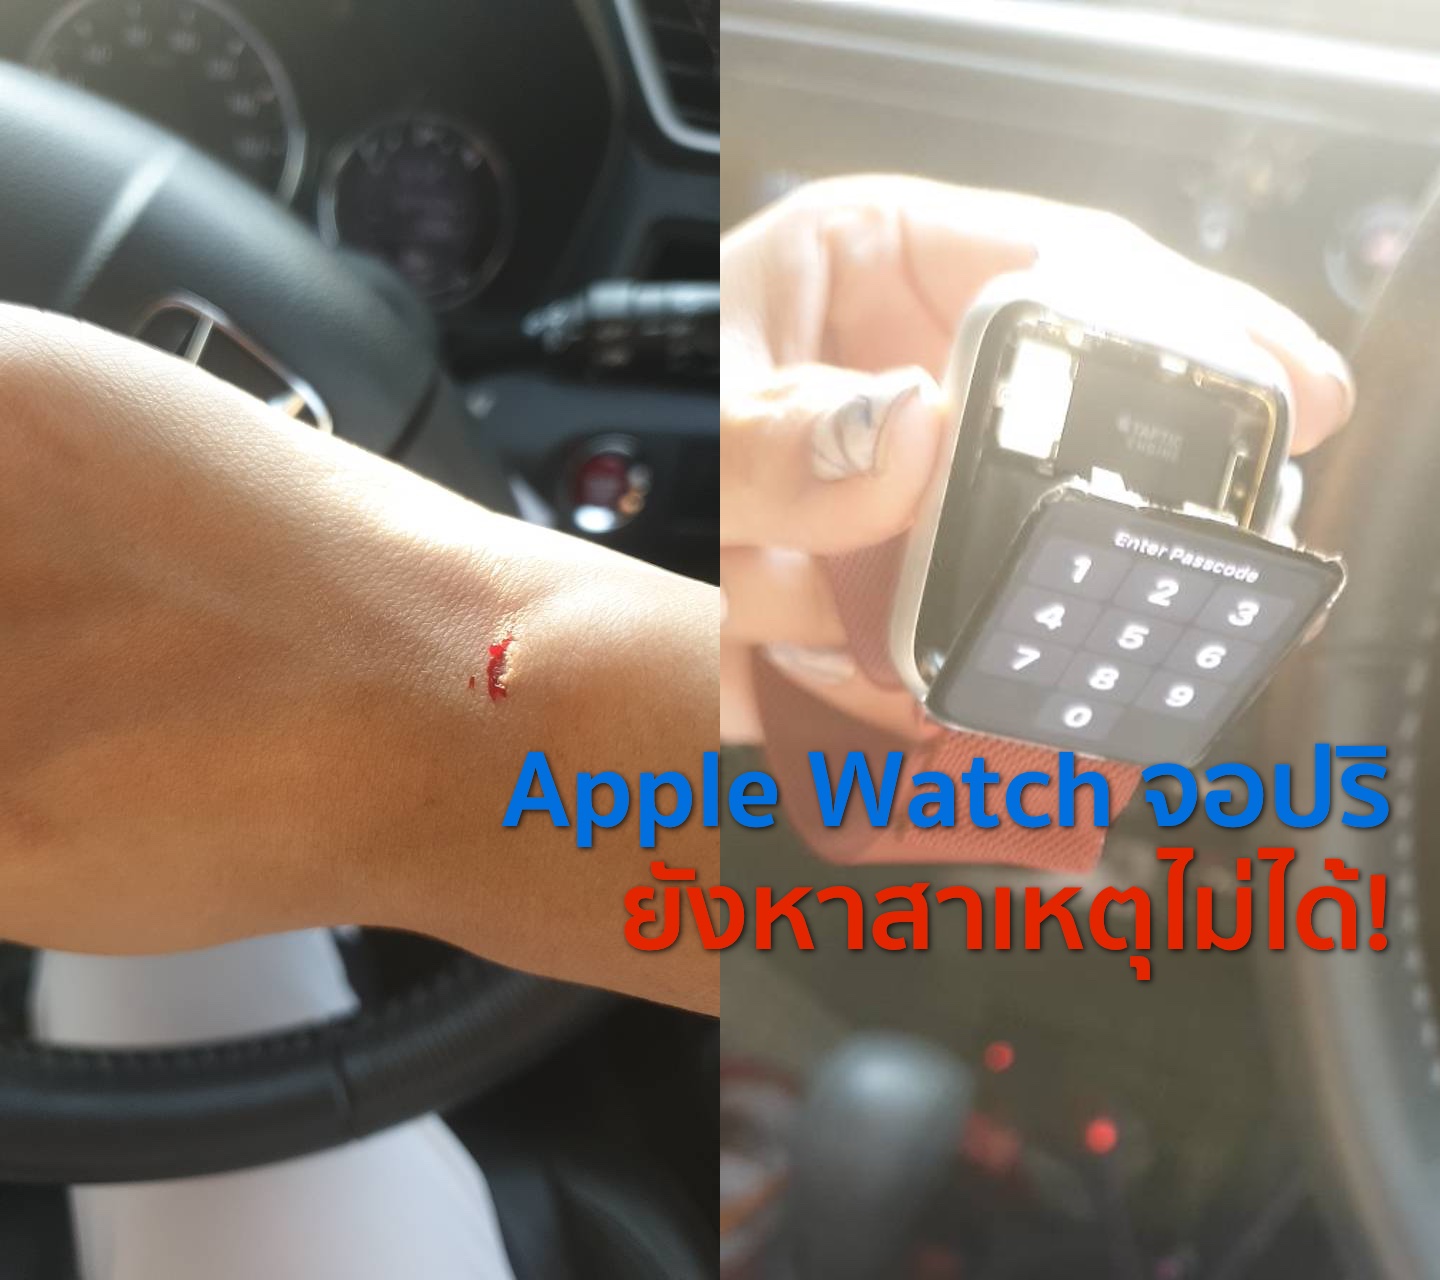 เกิดเหตุ Apple Watch จอปริจนบาดแขนในไทย ด้าน Apple ยังหาสาเหตุที่แน่ชัดไม่ได้